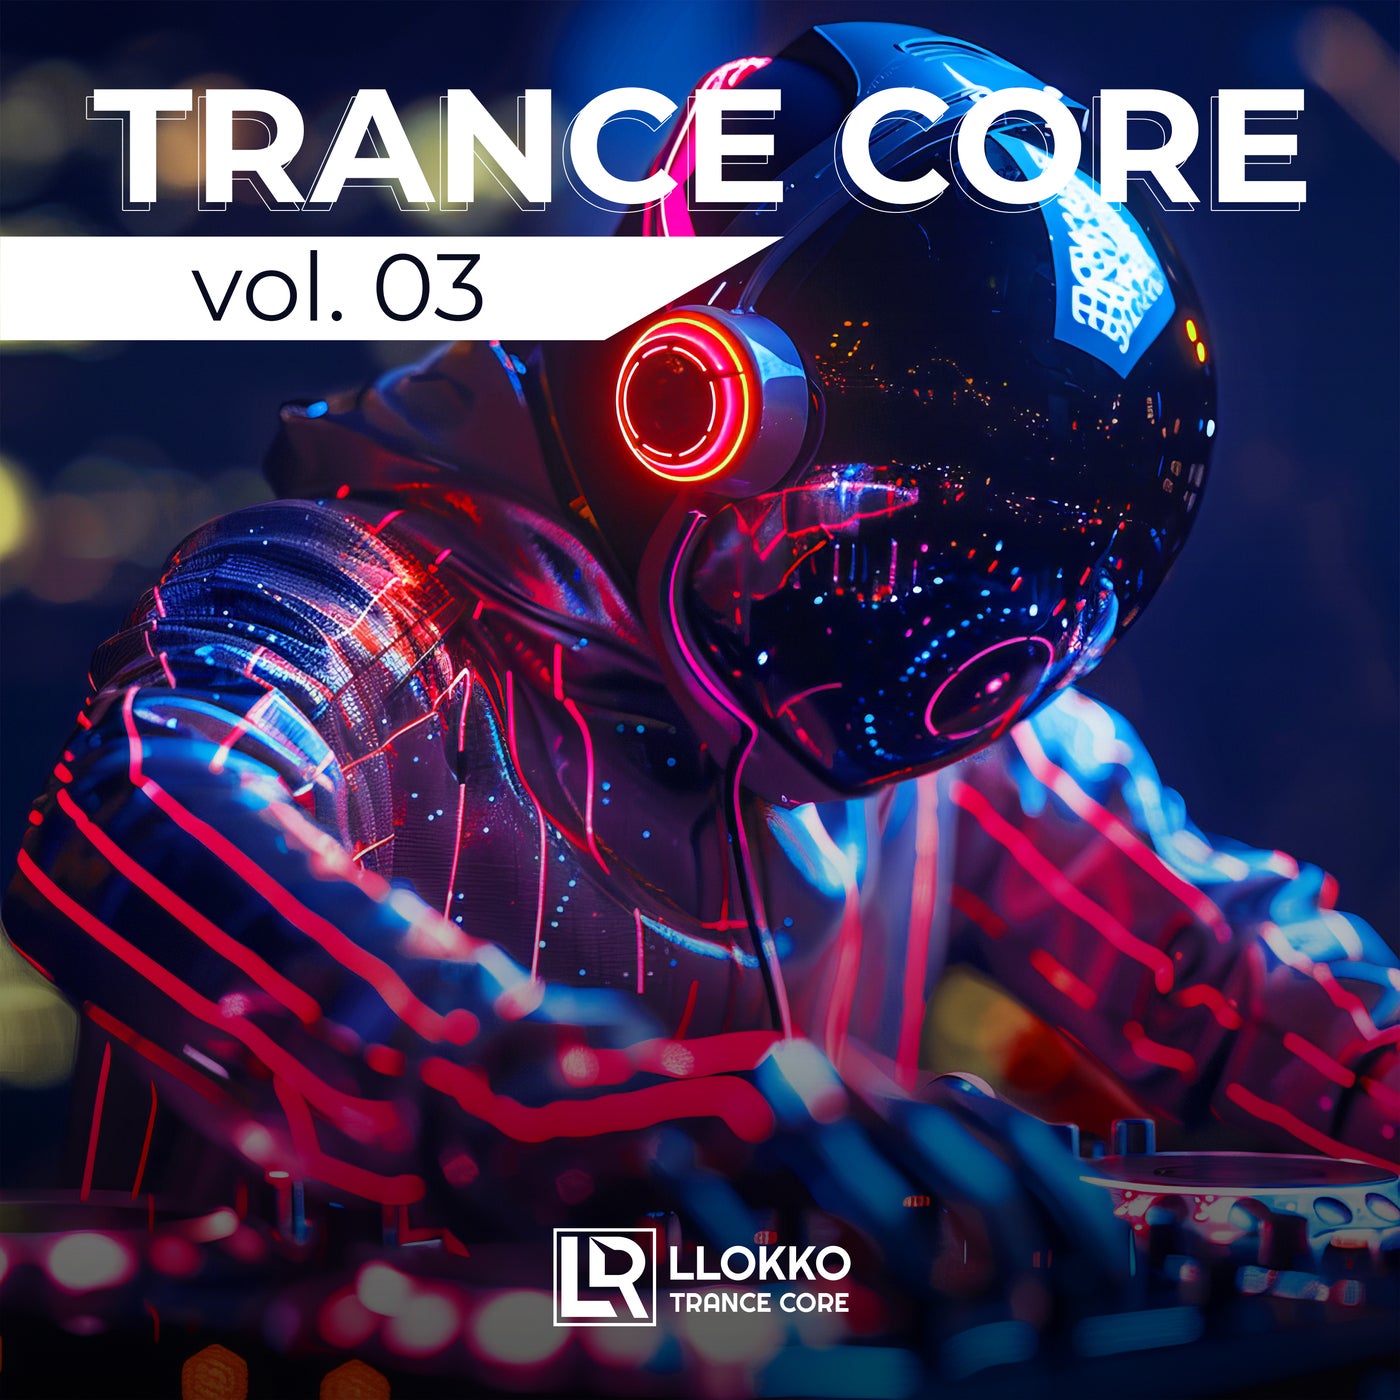 Trance Core Vol.03